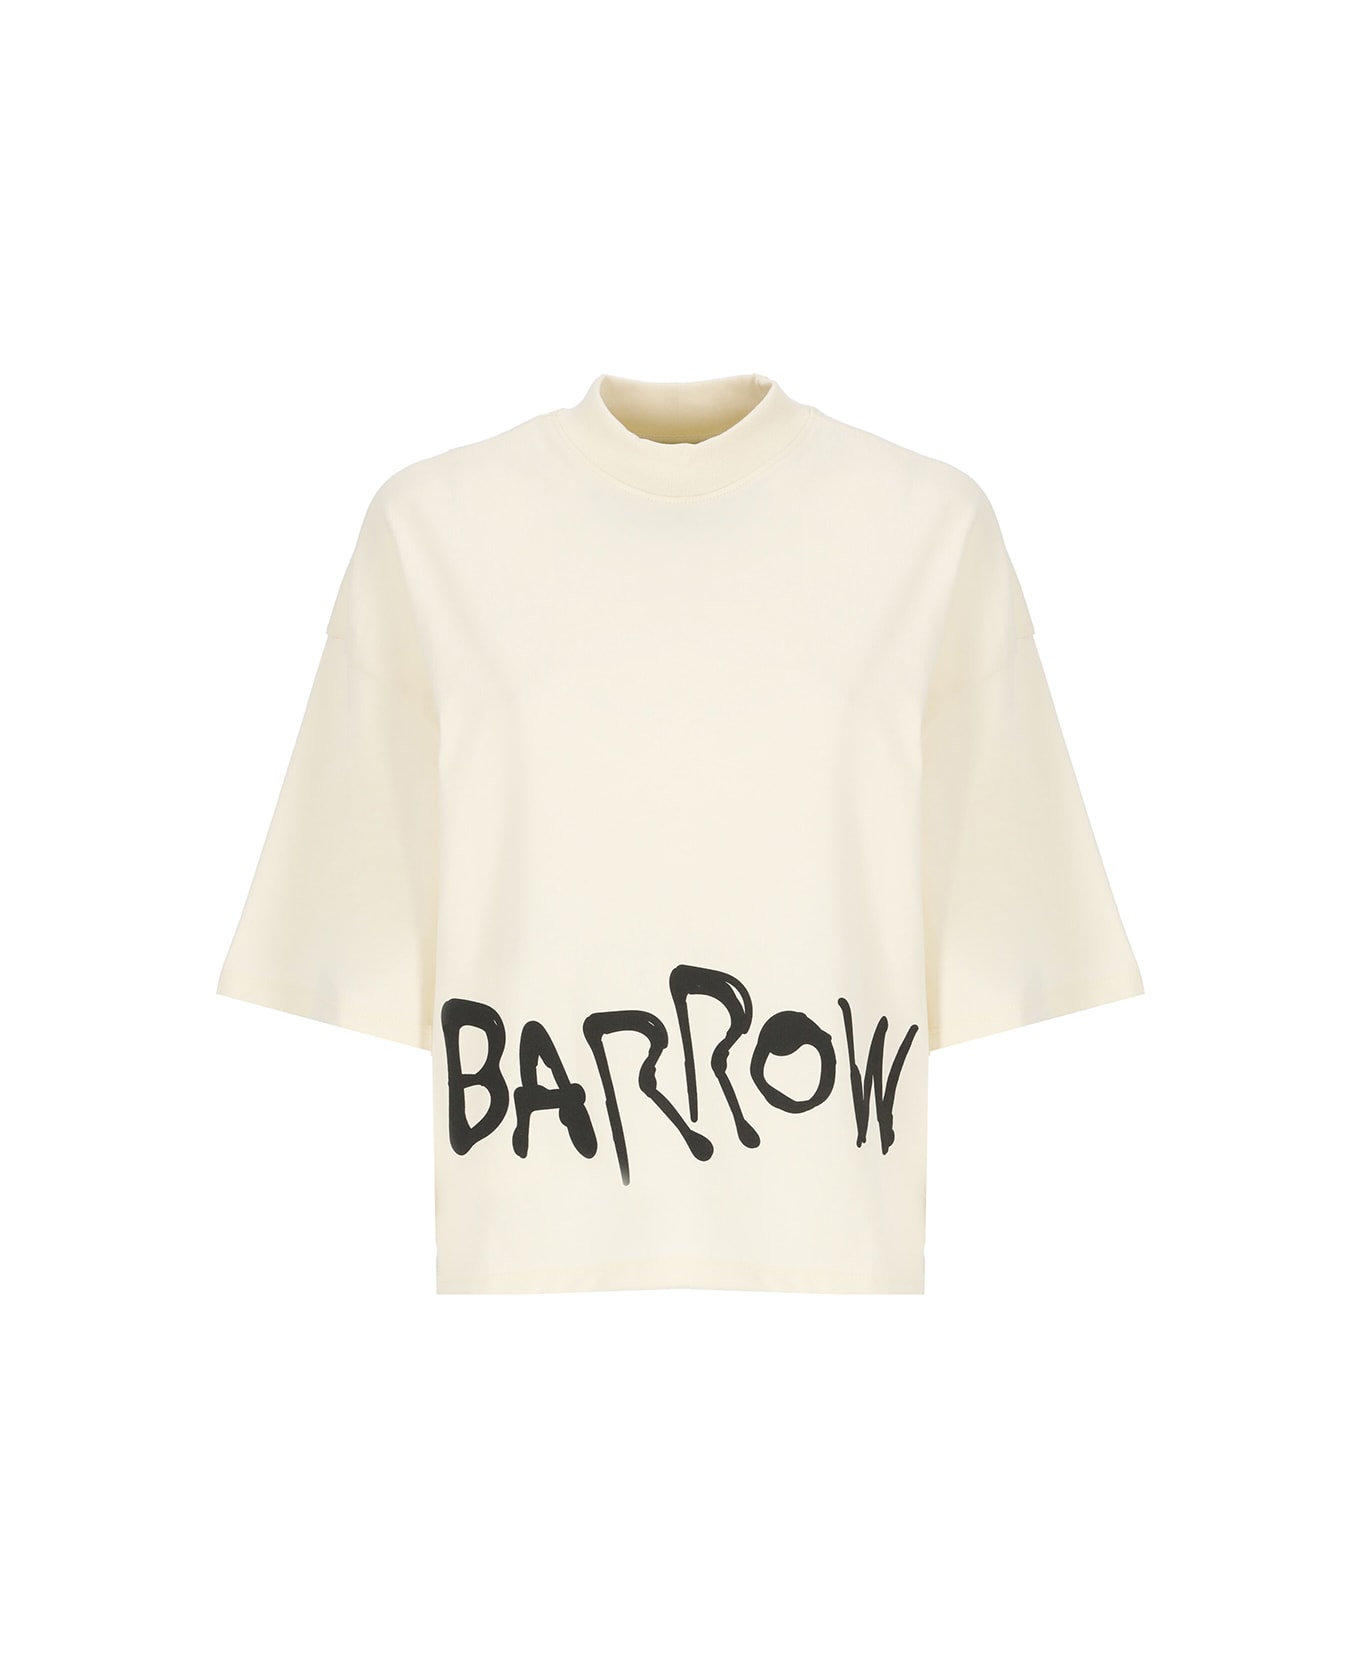 Barrow Logoed T-shirt - Butter シャツ